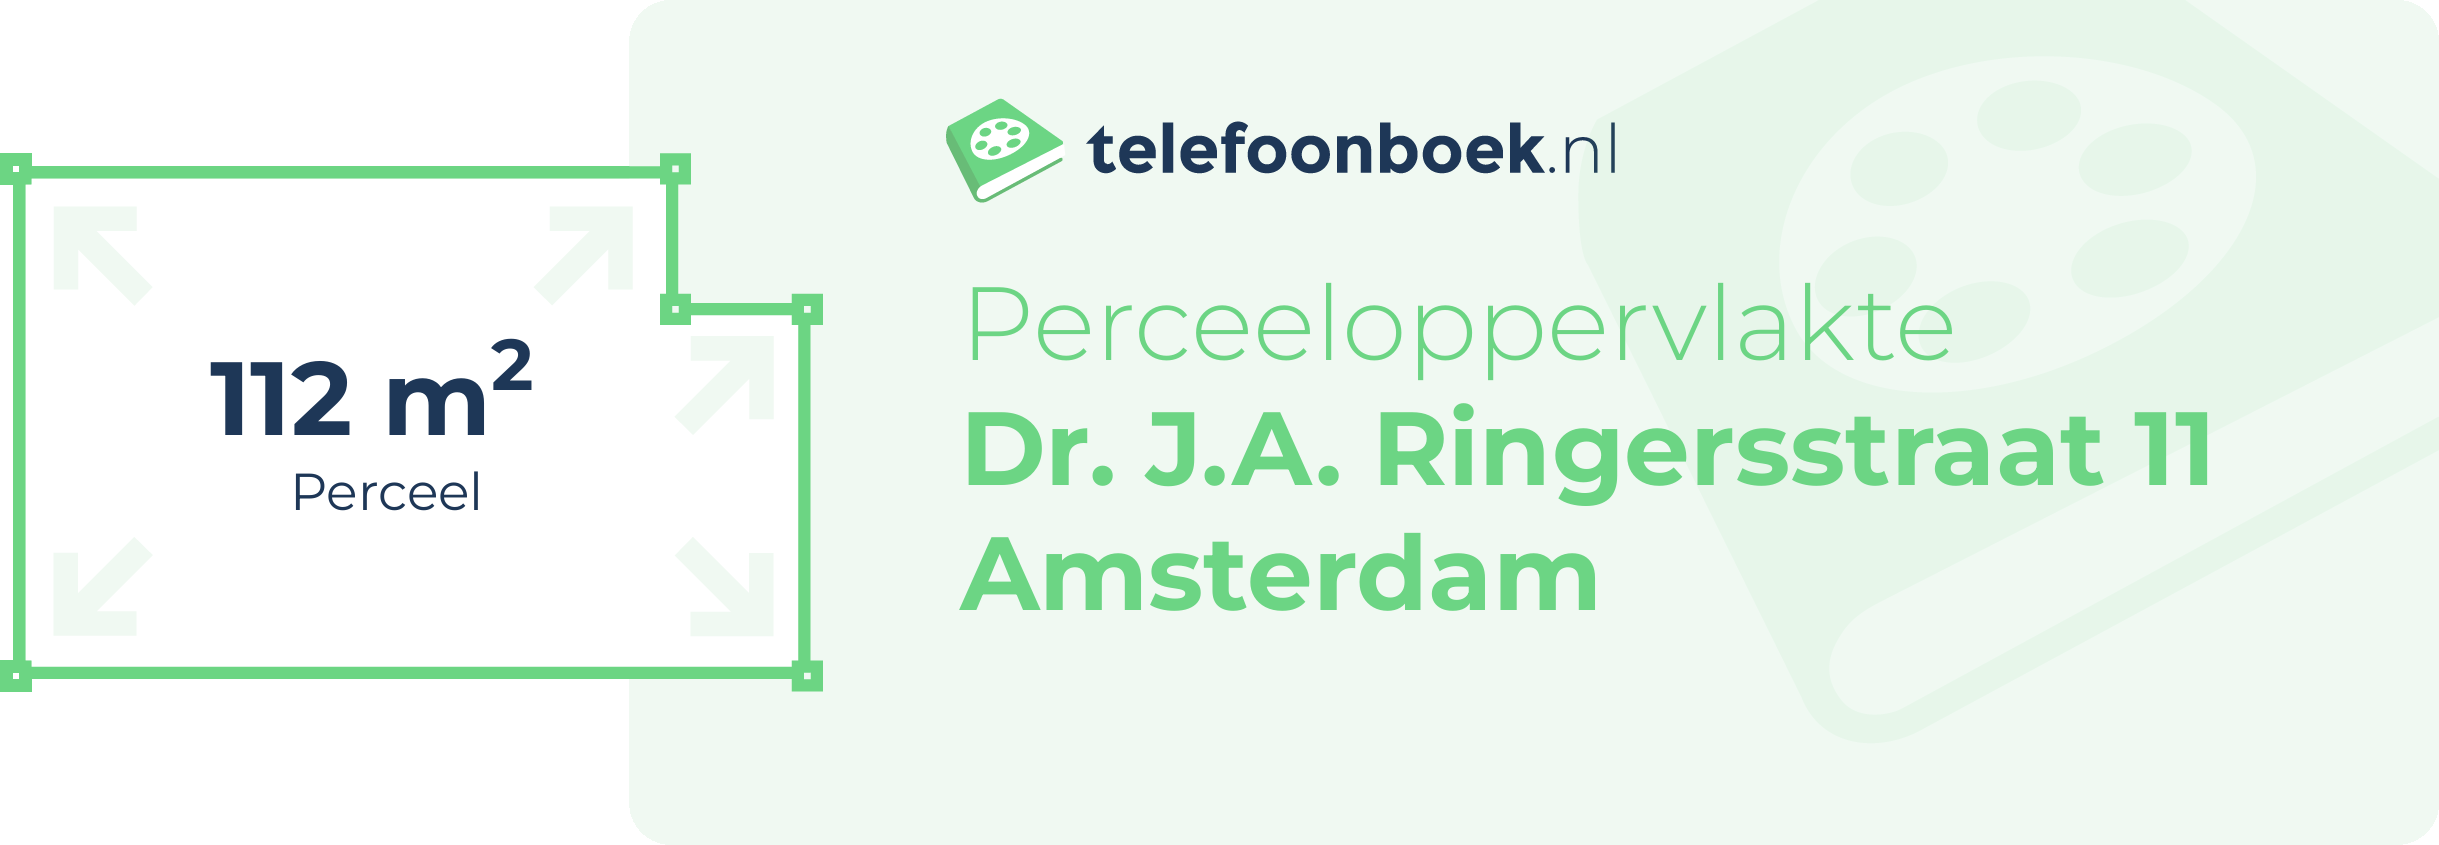 Perceeloppervlakte Dr. J.A. Ringersstraat 11 Amsterdam